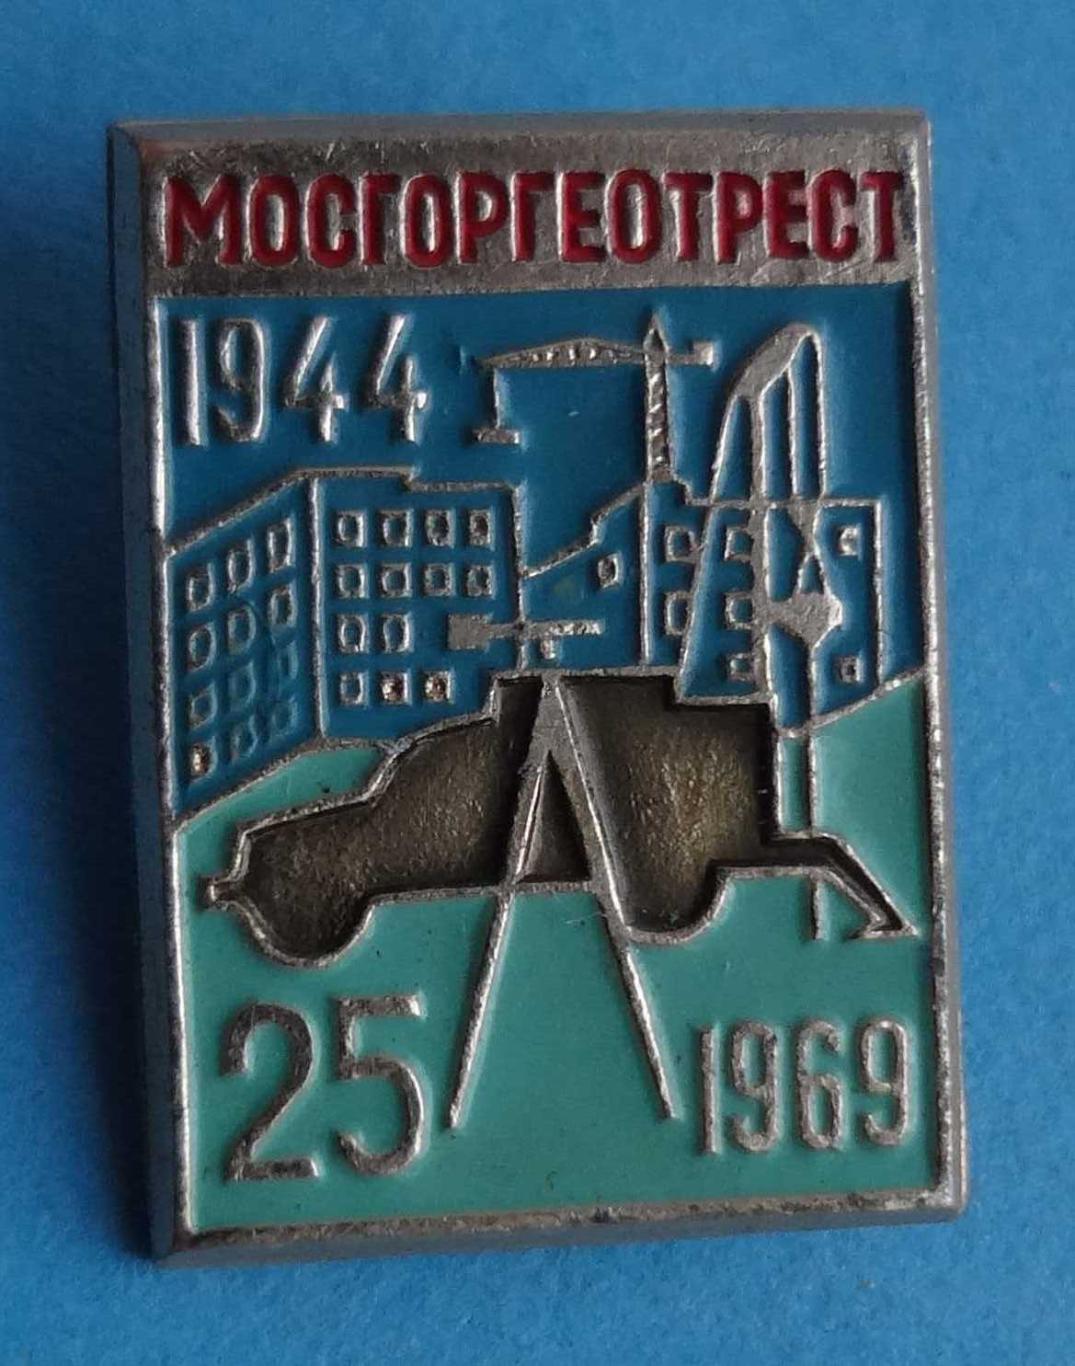 25 лет Мосгоргеотрест 1944-1969 кран (15)